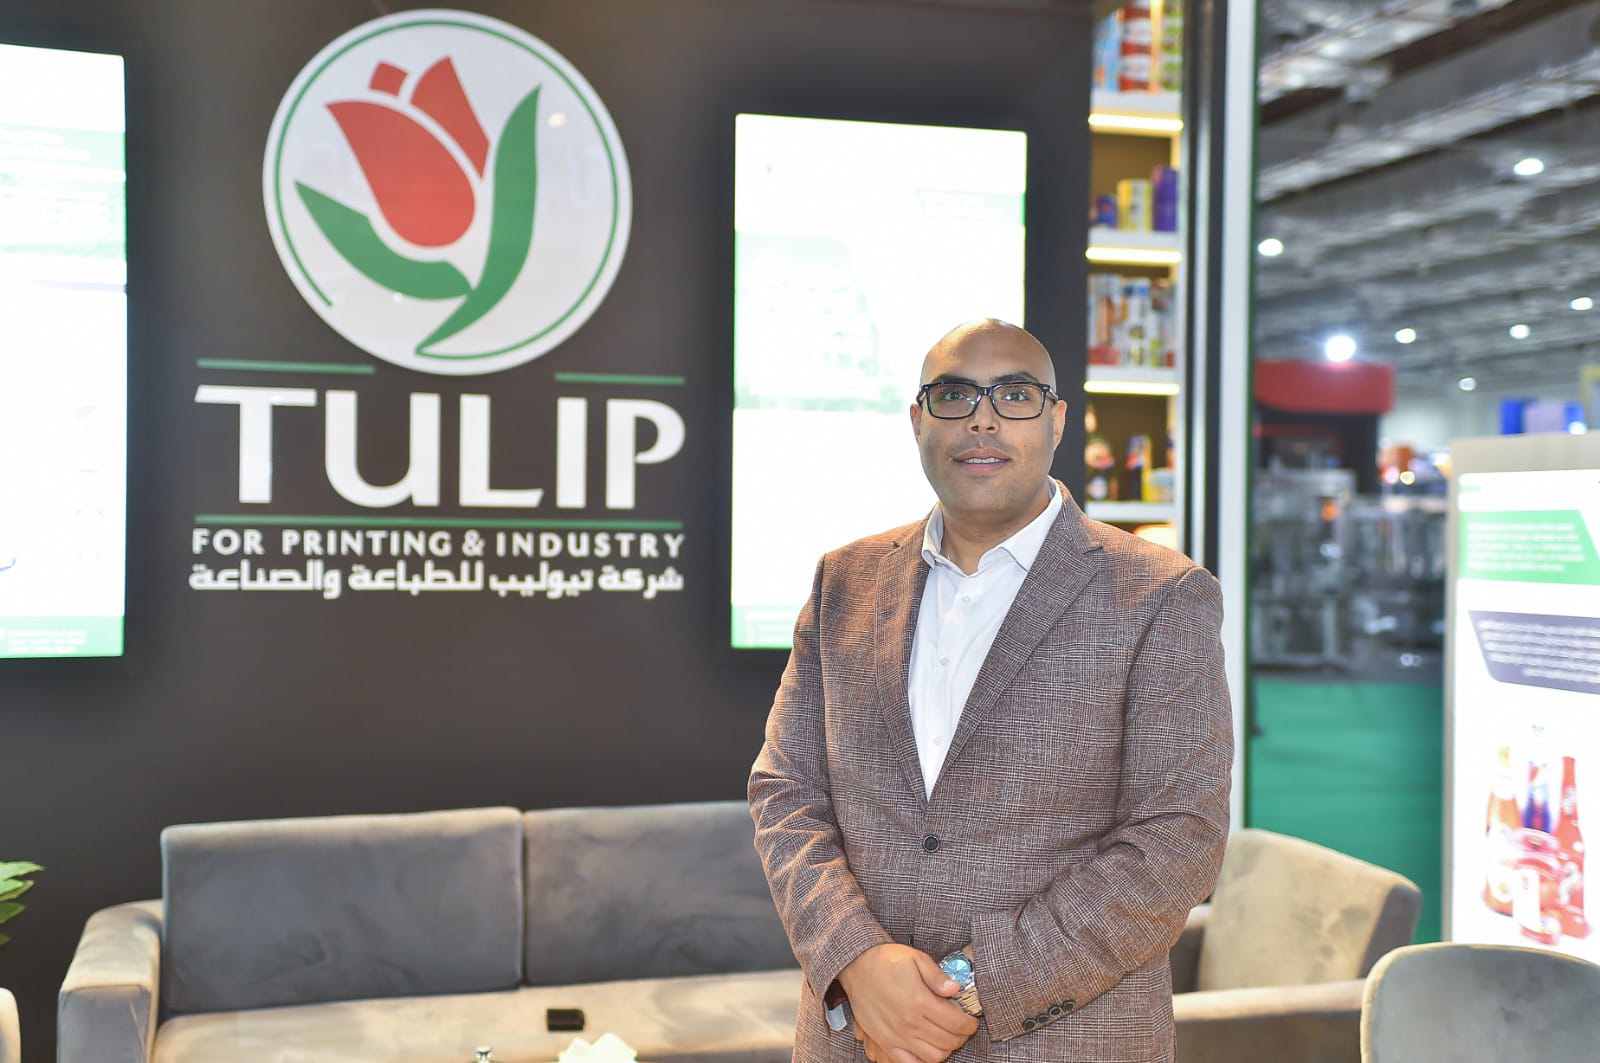 إبراهيم سلوت العضو المنتدب لشركة تيوليب Tulip للطباعة والصناعة